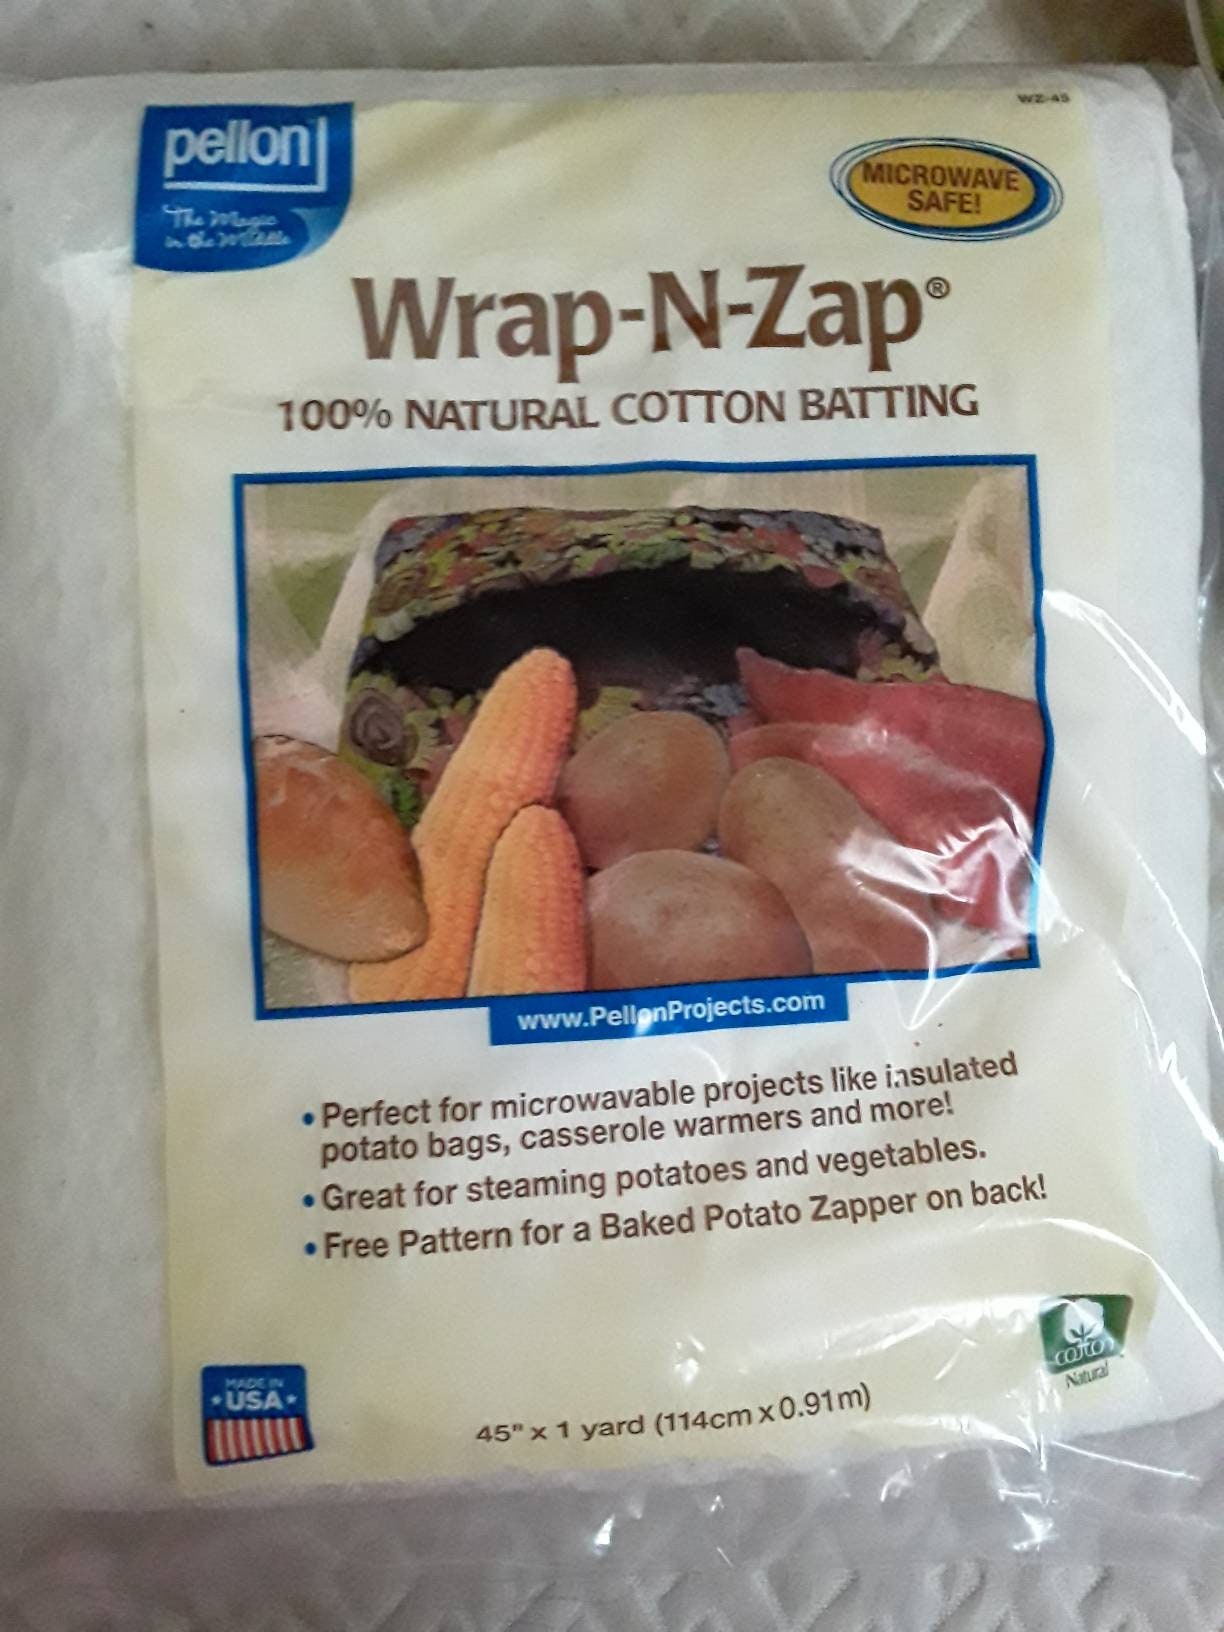 Wrap-N-Zap Cotton Batting